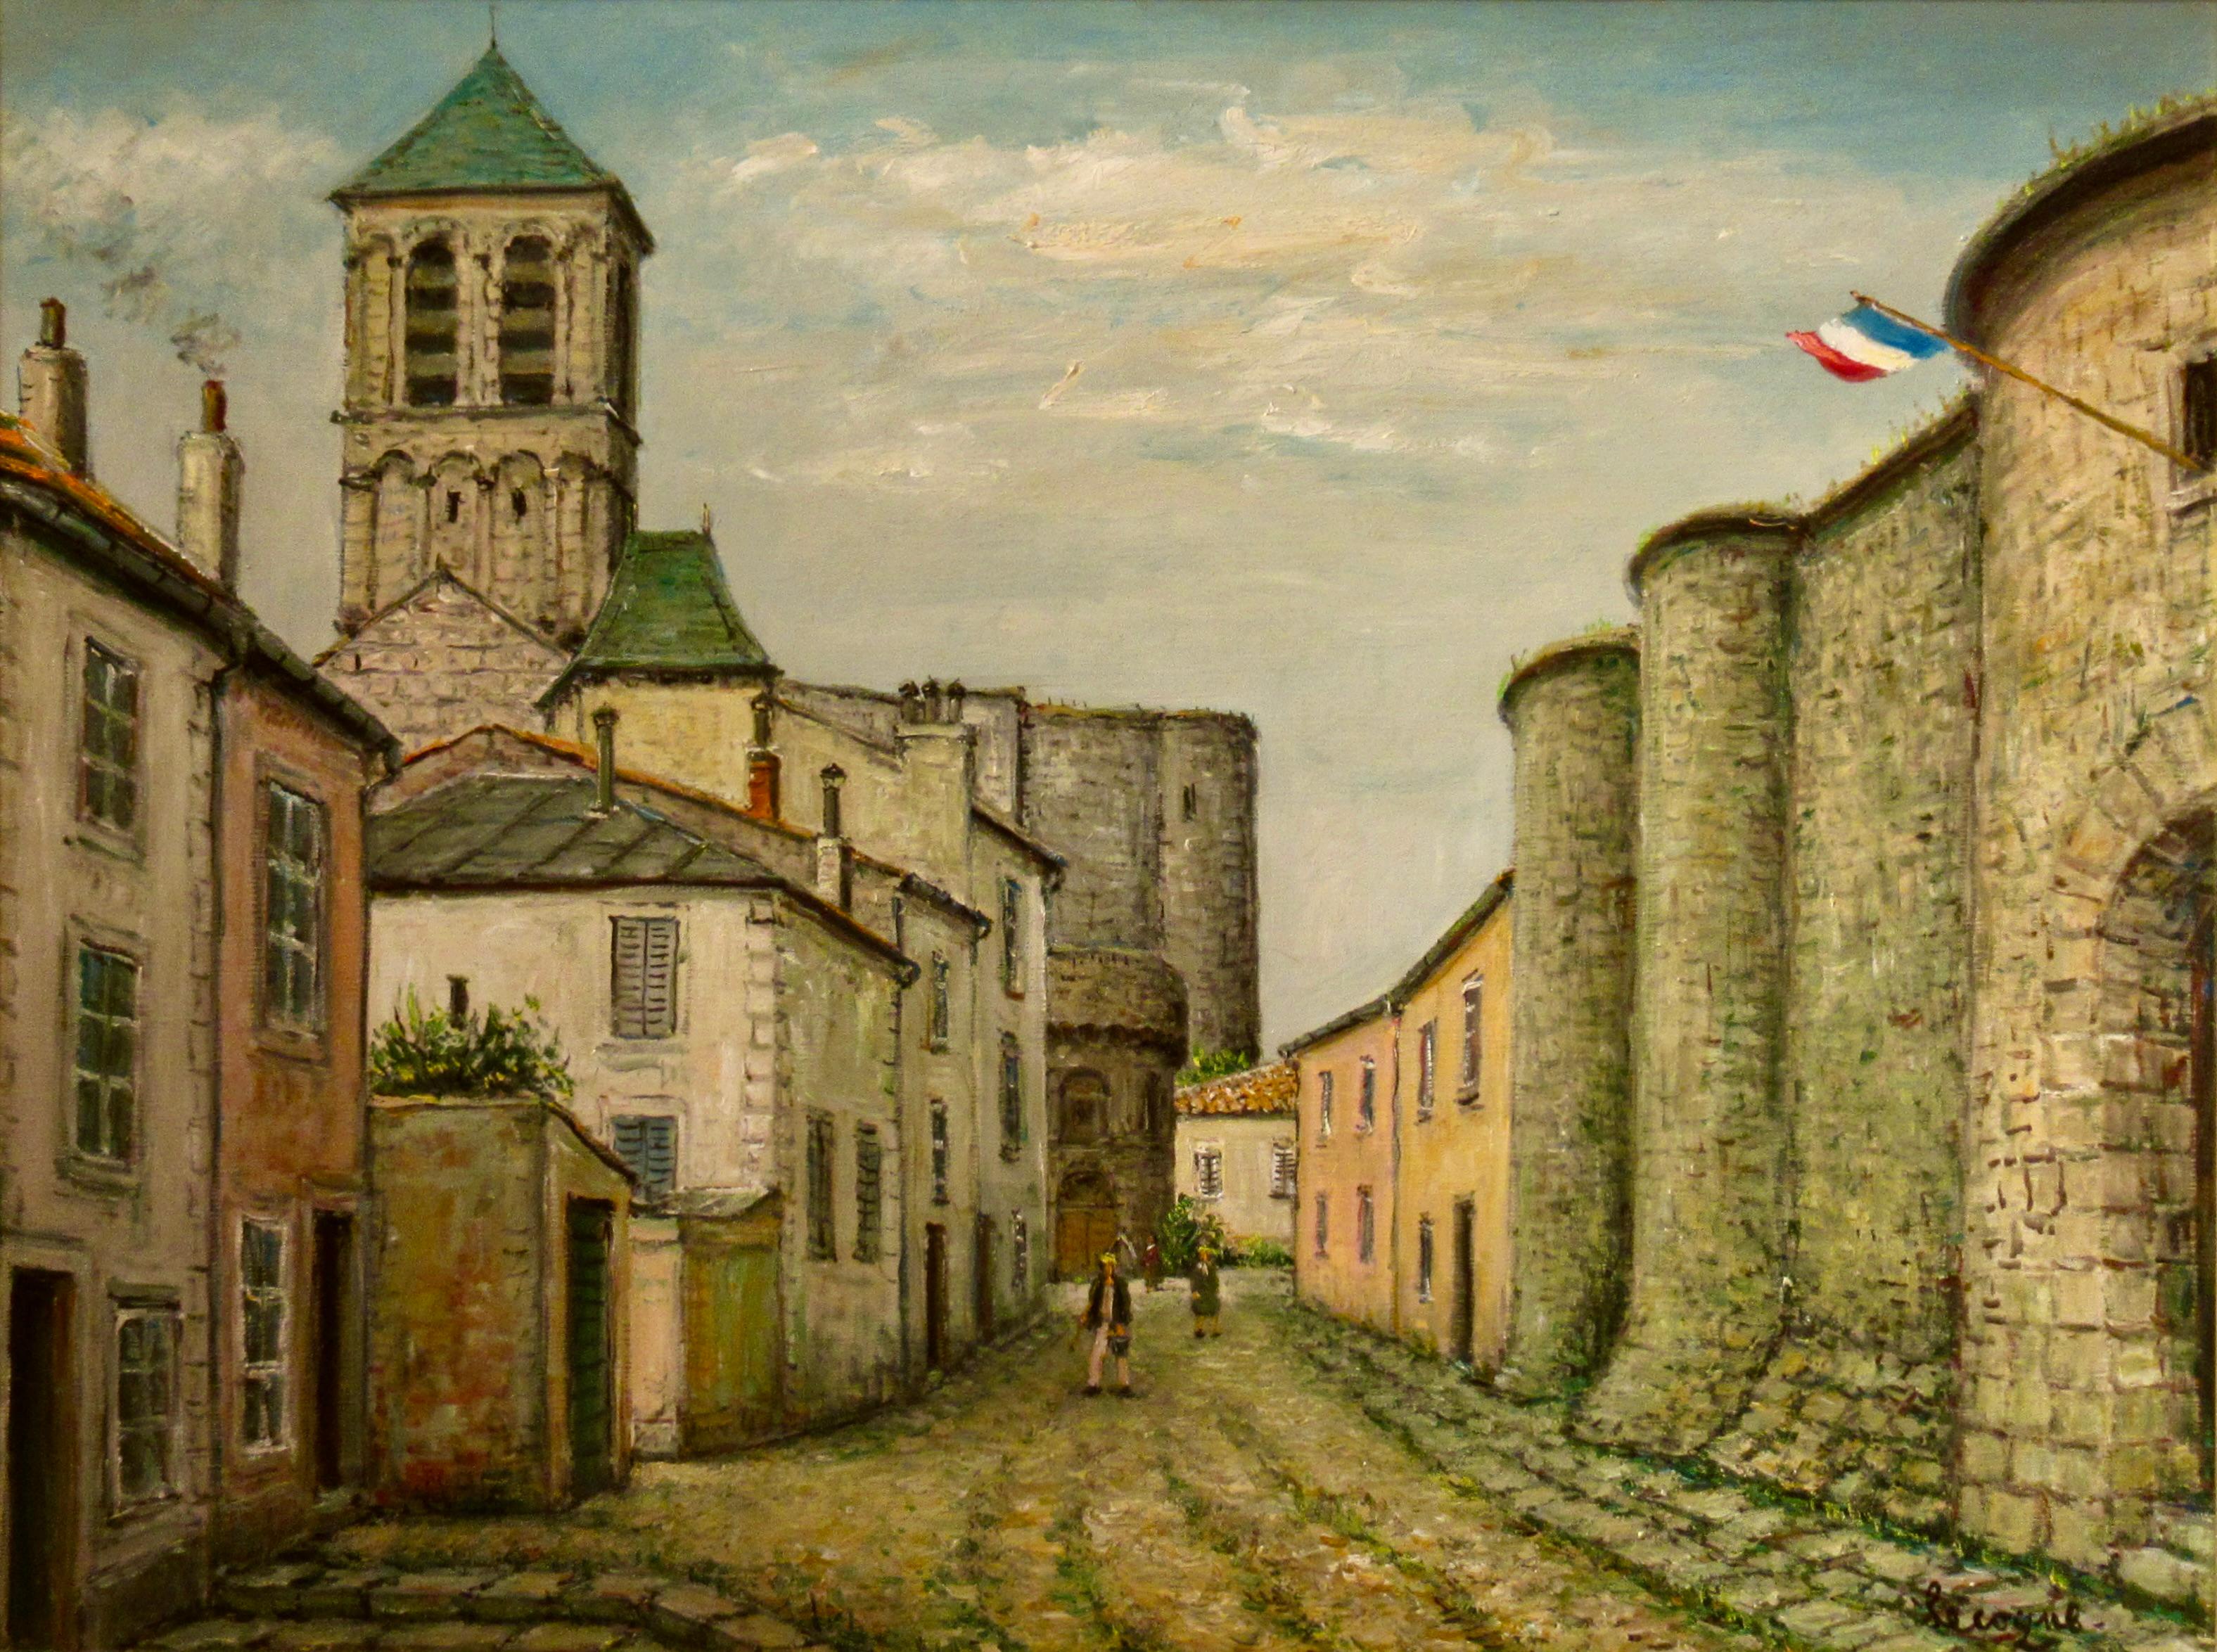 Mittelalterliche Stadt – Painting von Alois Lecoque